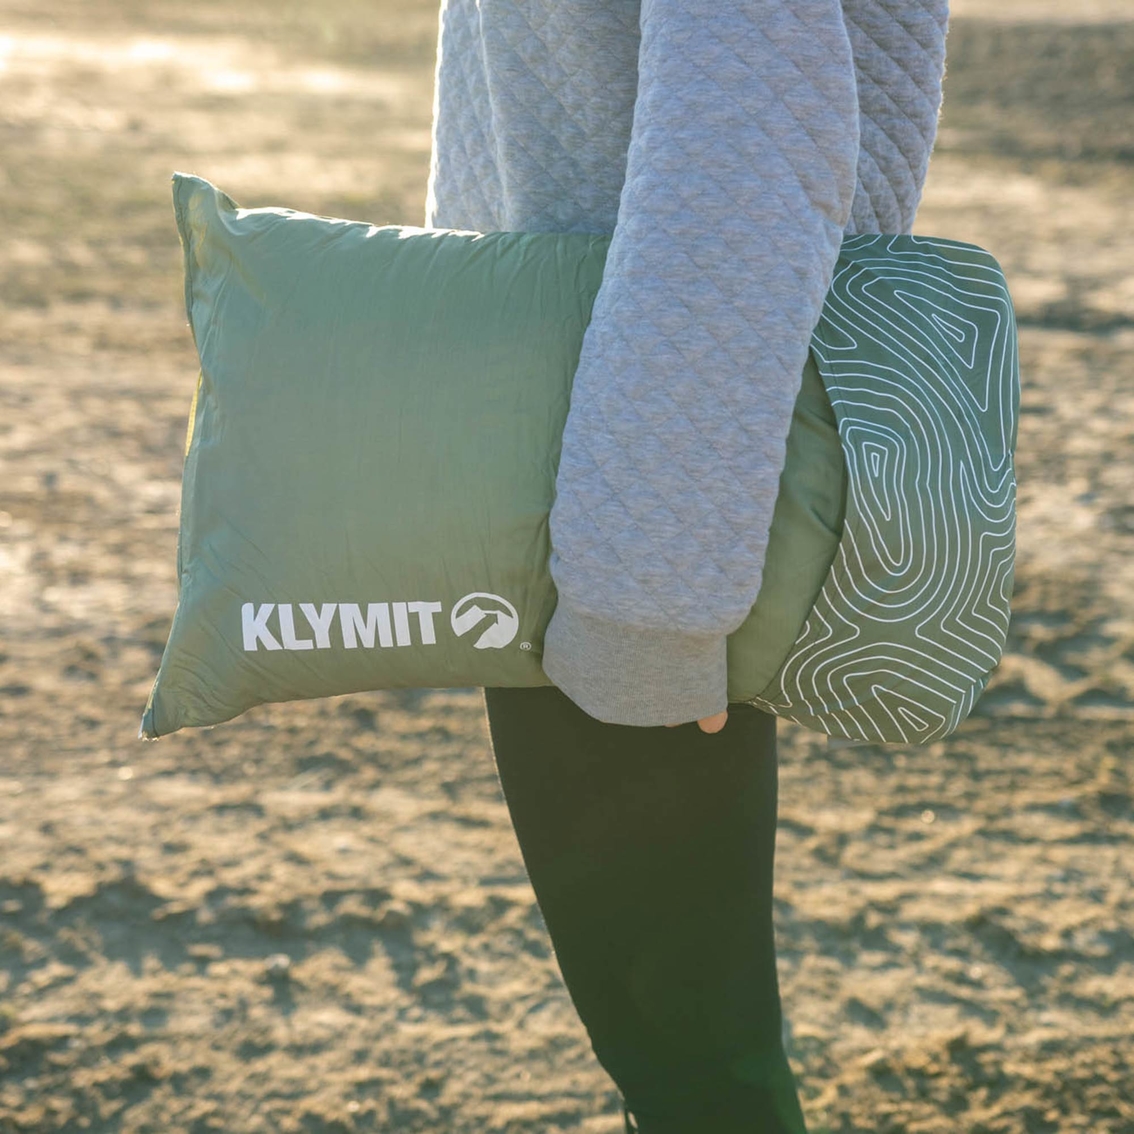 Klymit Drift Car Camp Pillow - Image 4 of 10